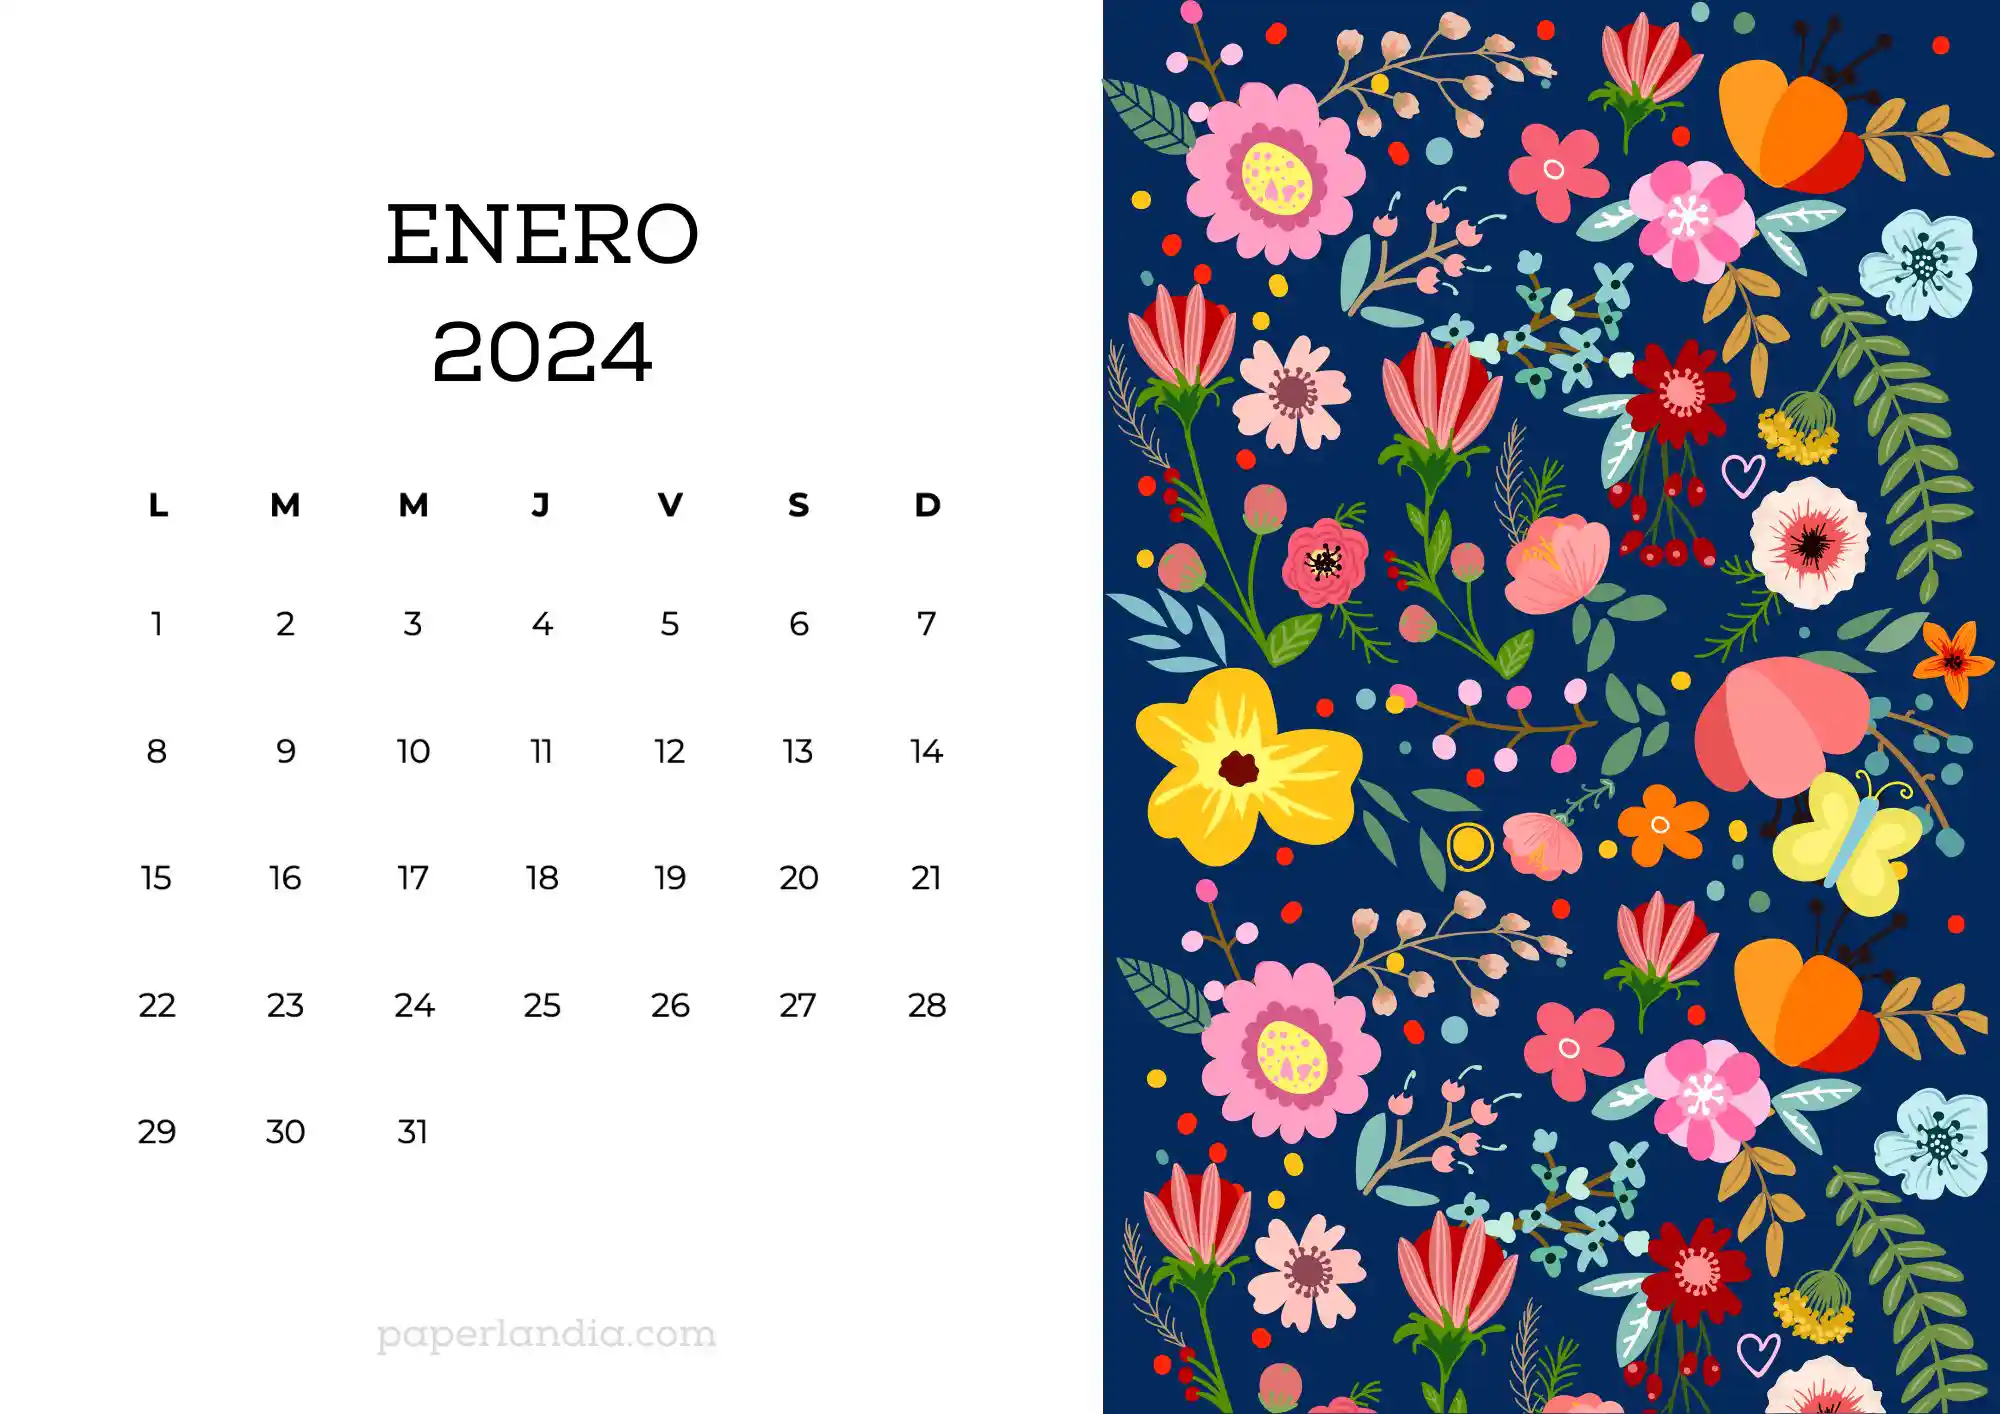 Calendario enero 2024 horizontal con flores escandinavas fondo azul